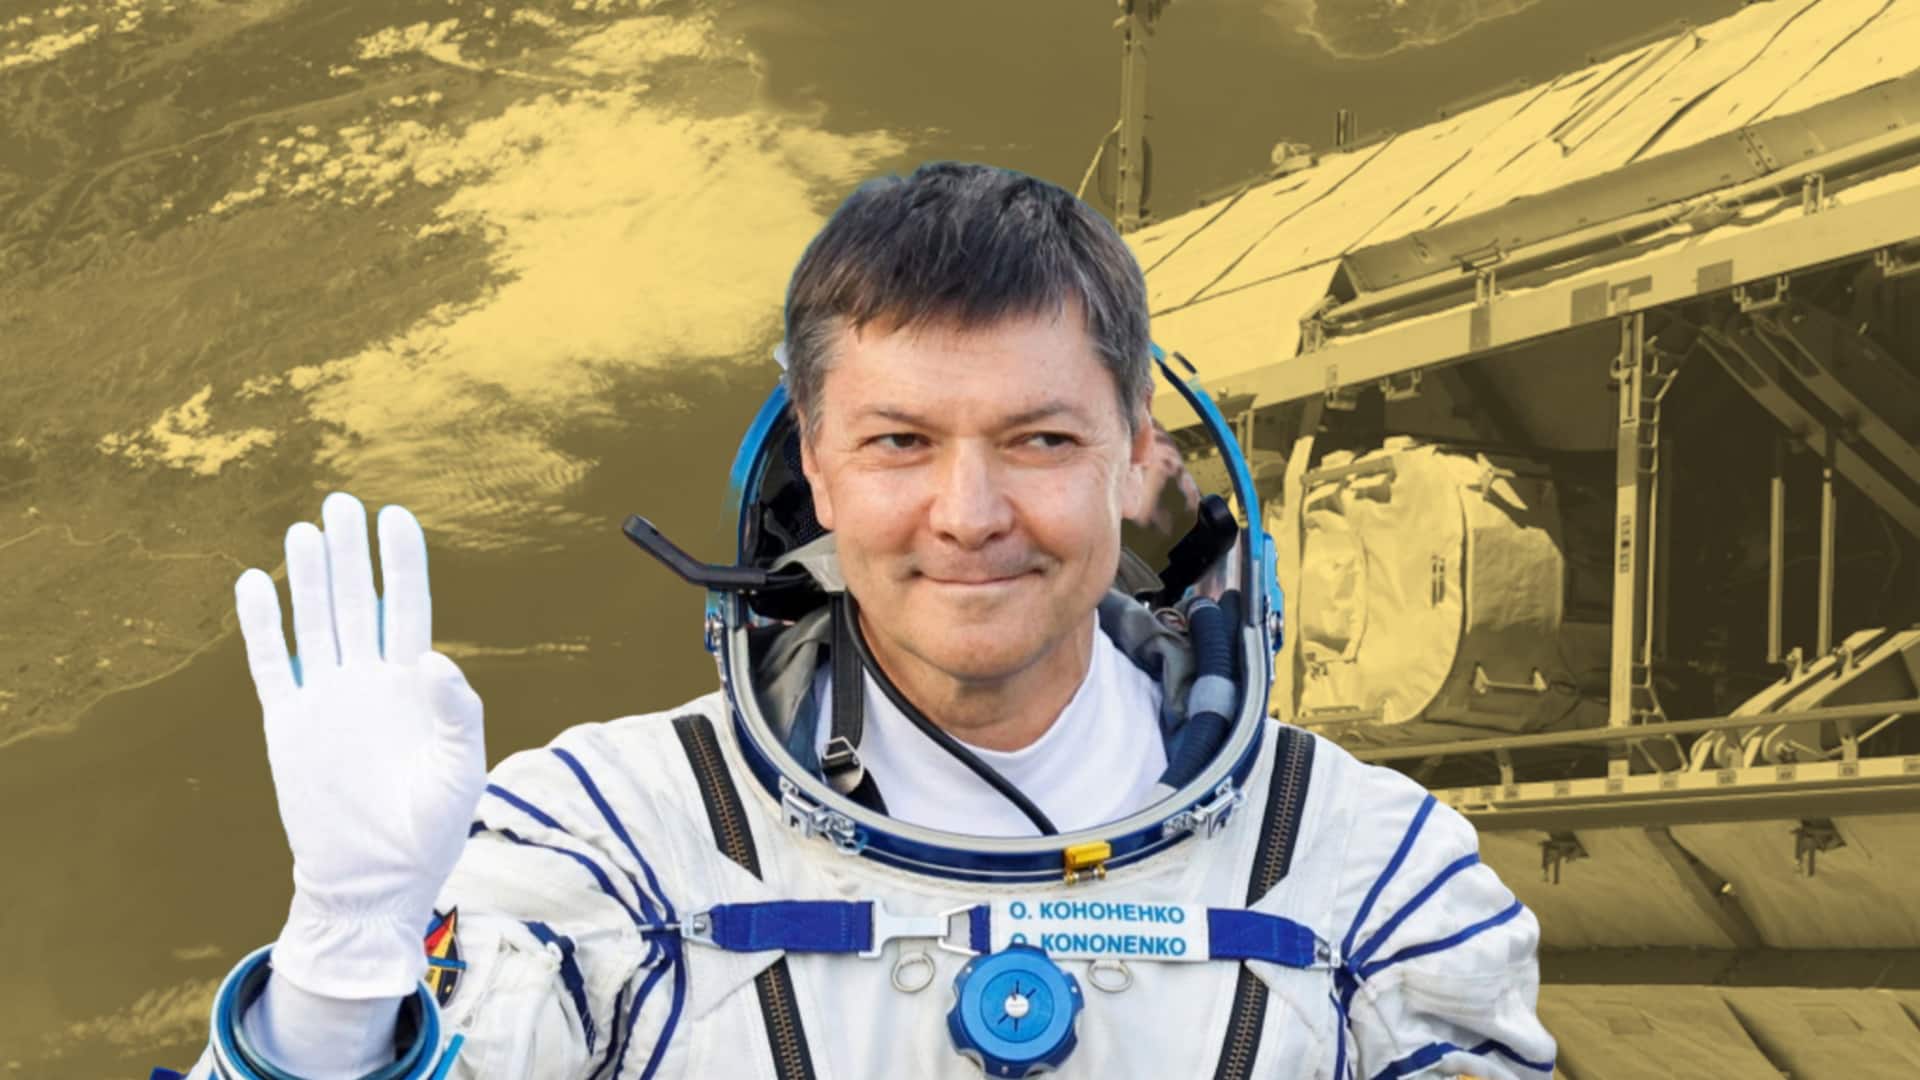 रूस के ओलेग कोनोनेंको बने अंतरिक्ष में सबसे ज्यादा दिन गुजारने वाले व्यक्ति